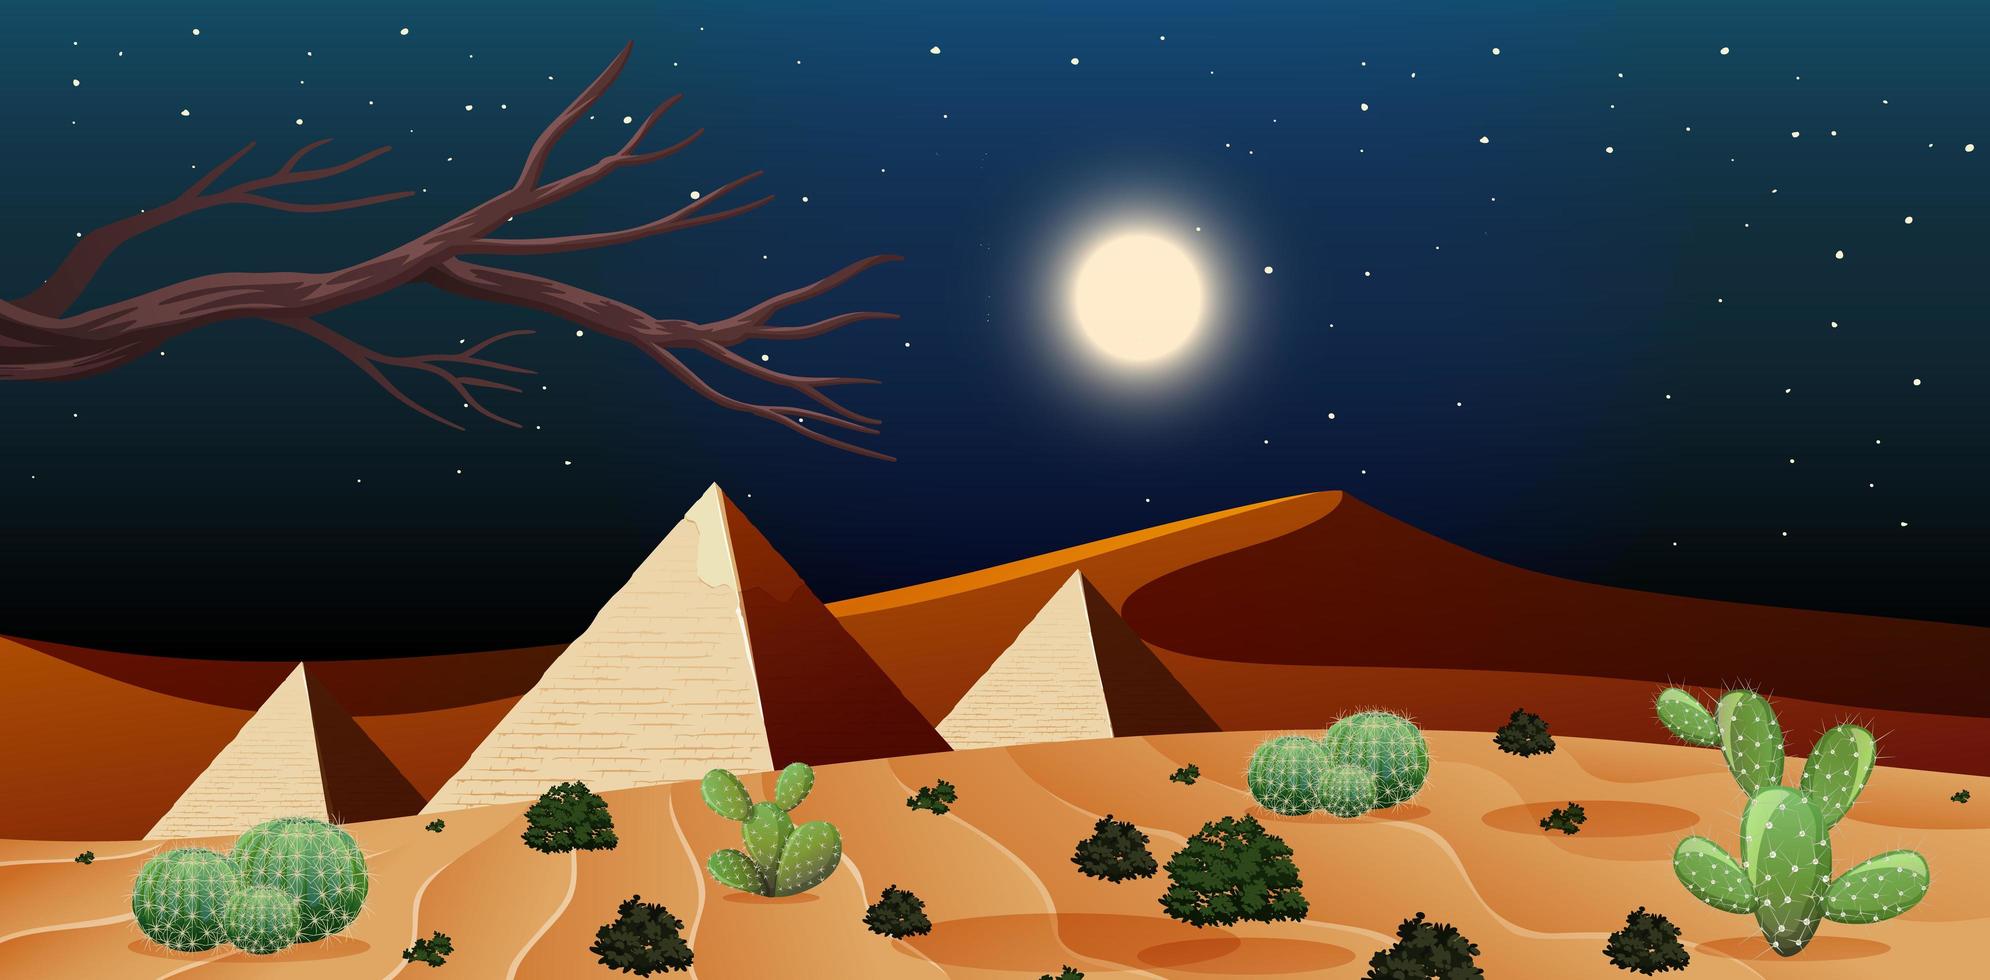 Wild desert landscape at night scene vector